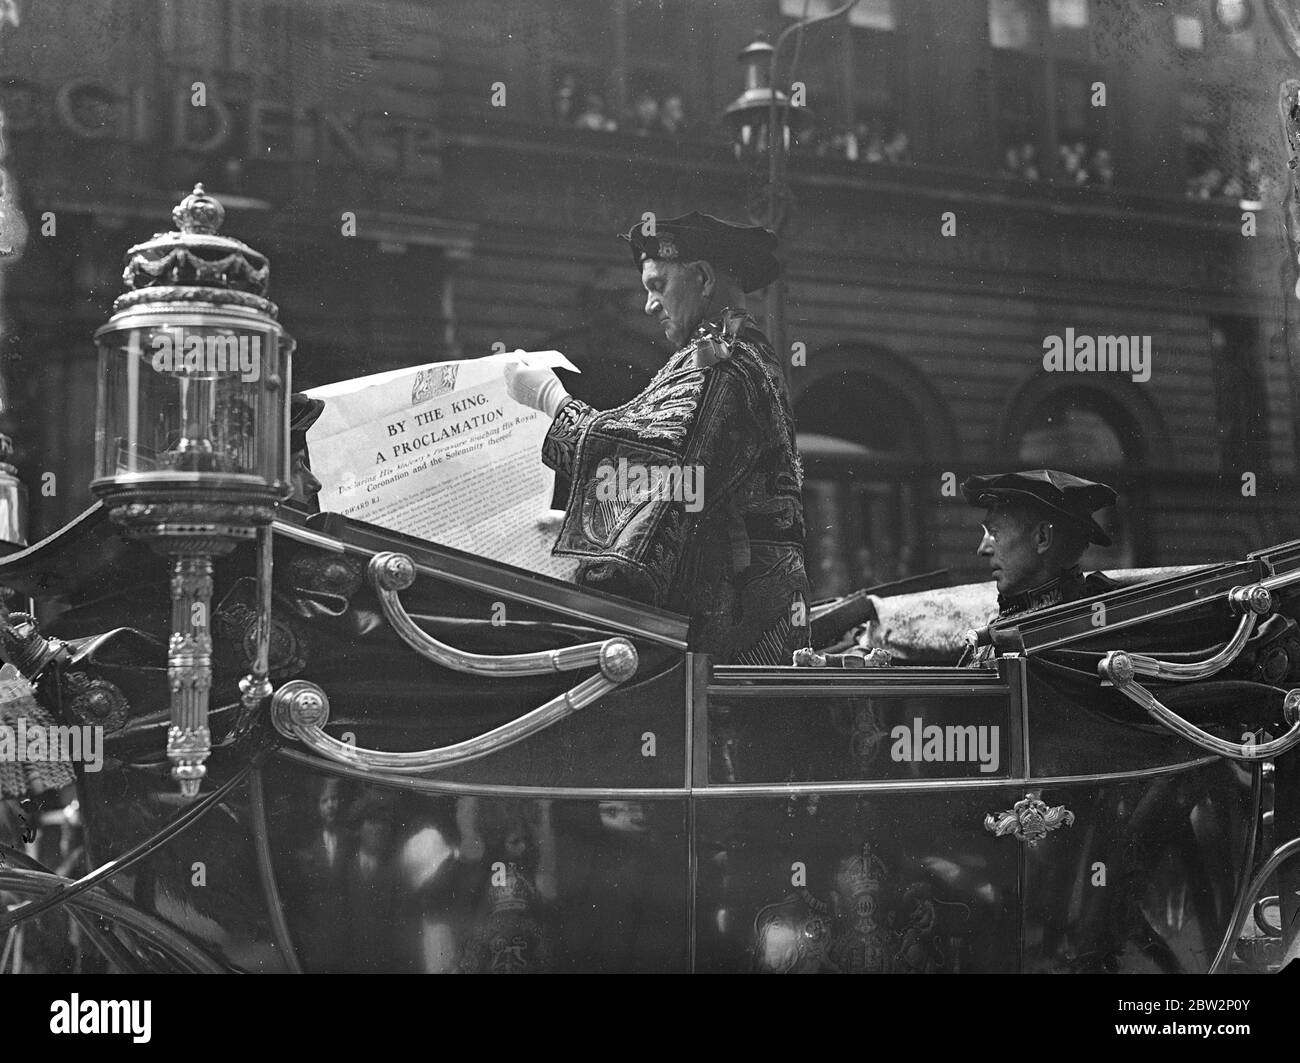 Proclama reale ; un carro contenente gli araldi reali con la proclama reale che convoca il popolo all'incoronazione di Edoardo VIII 29 maggio 1936 Foto Stock